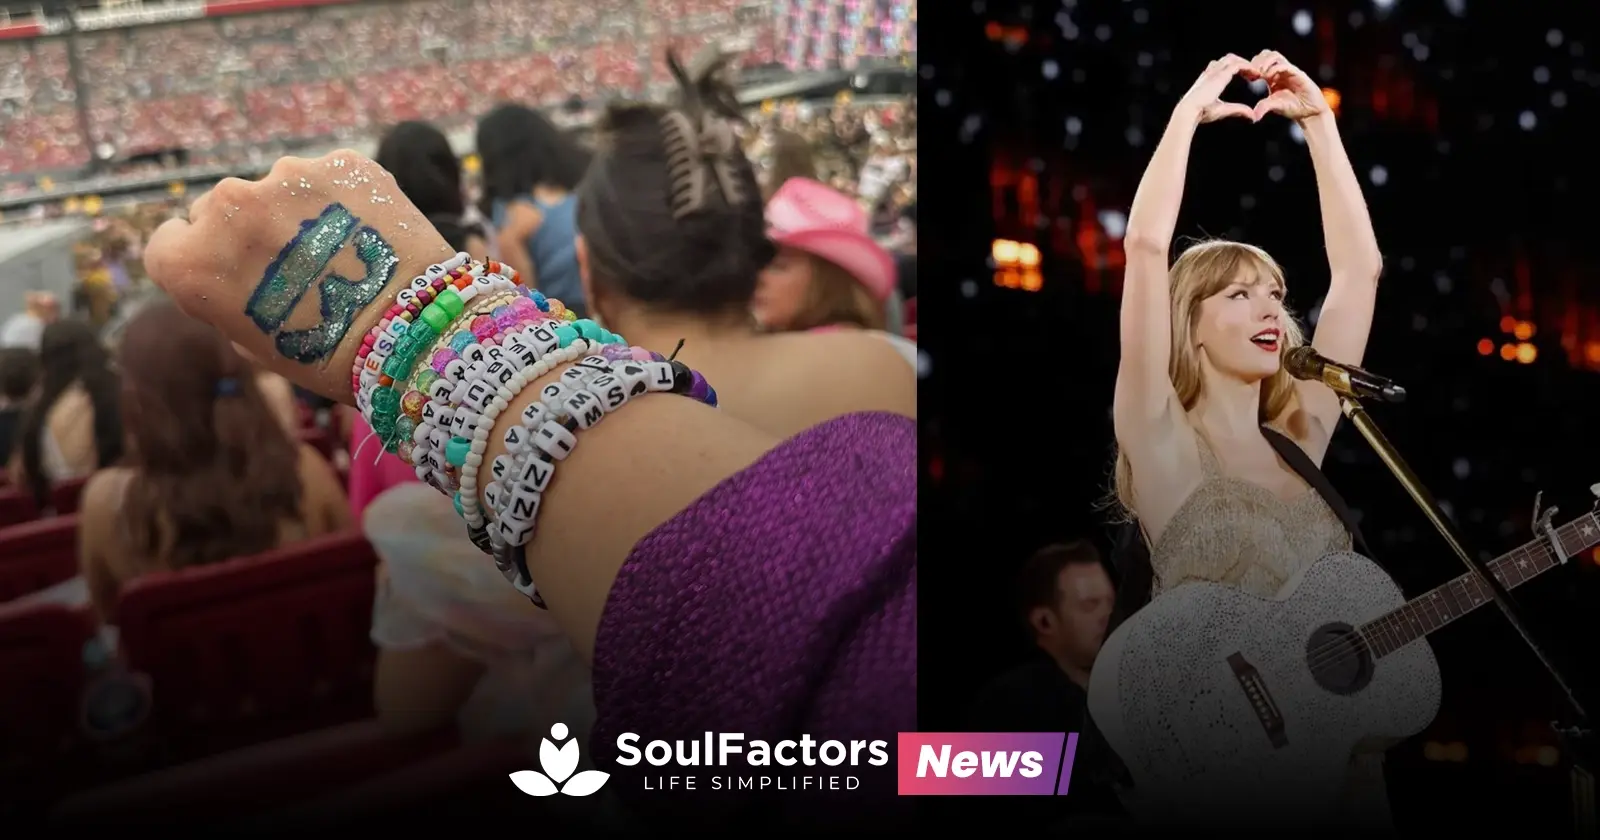 Taylor Swift rekindled friendship bracelet trend